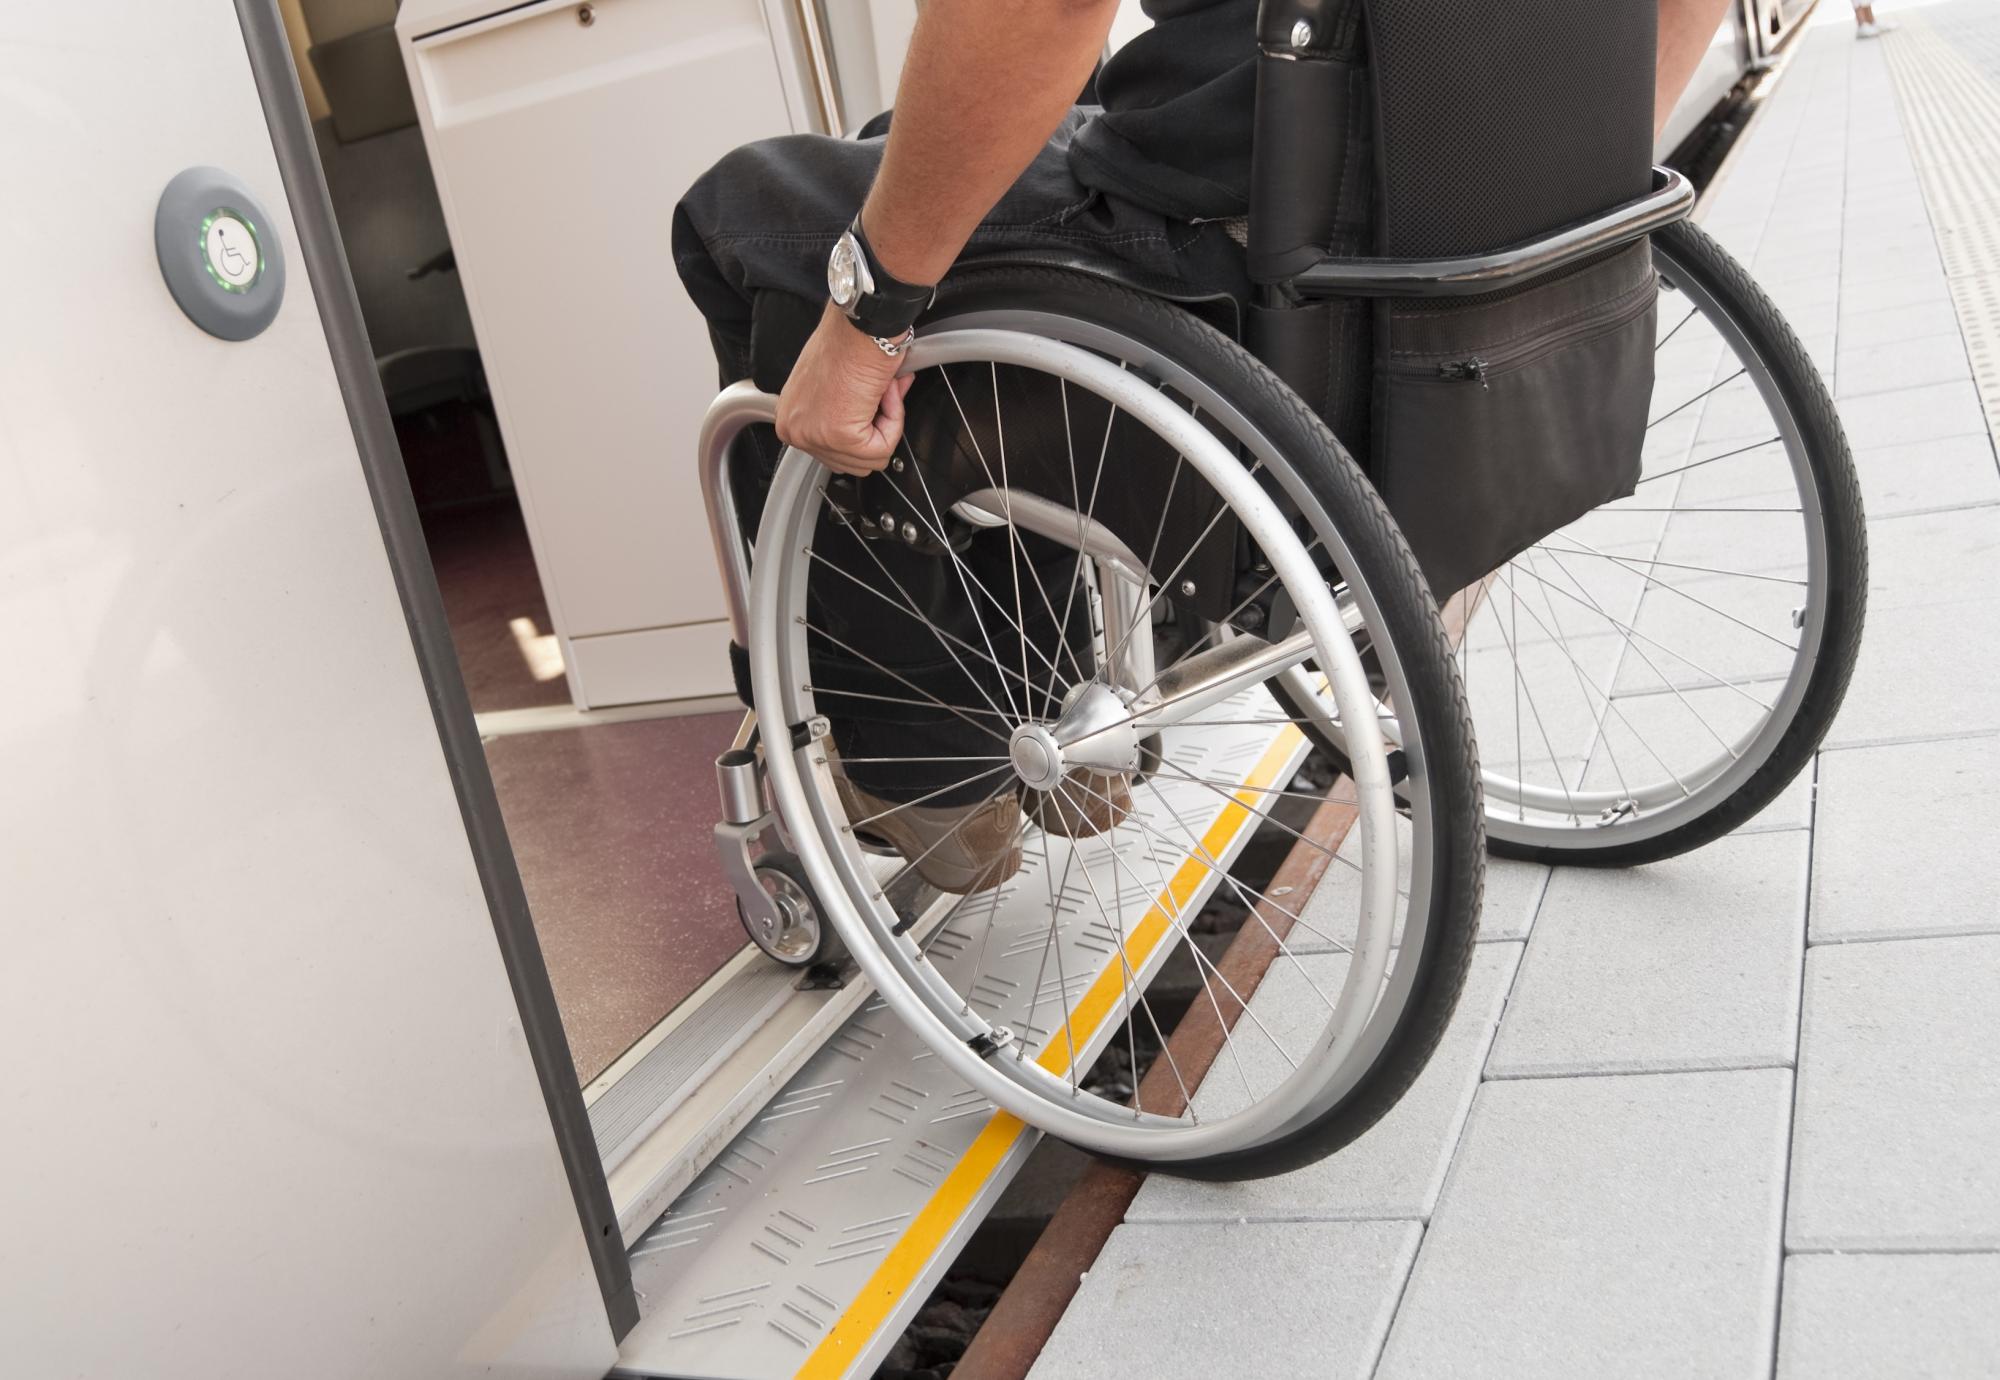 Wheelchair user boarding a train